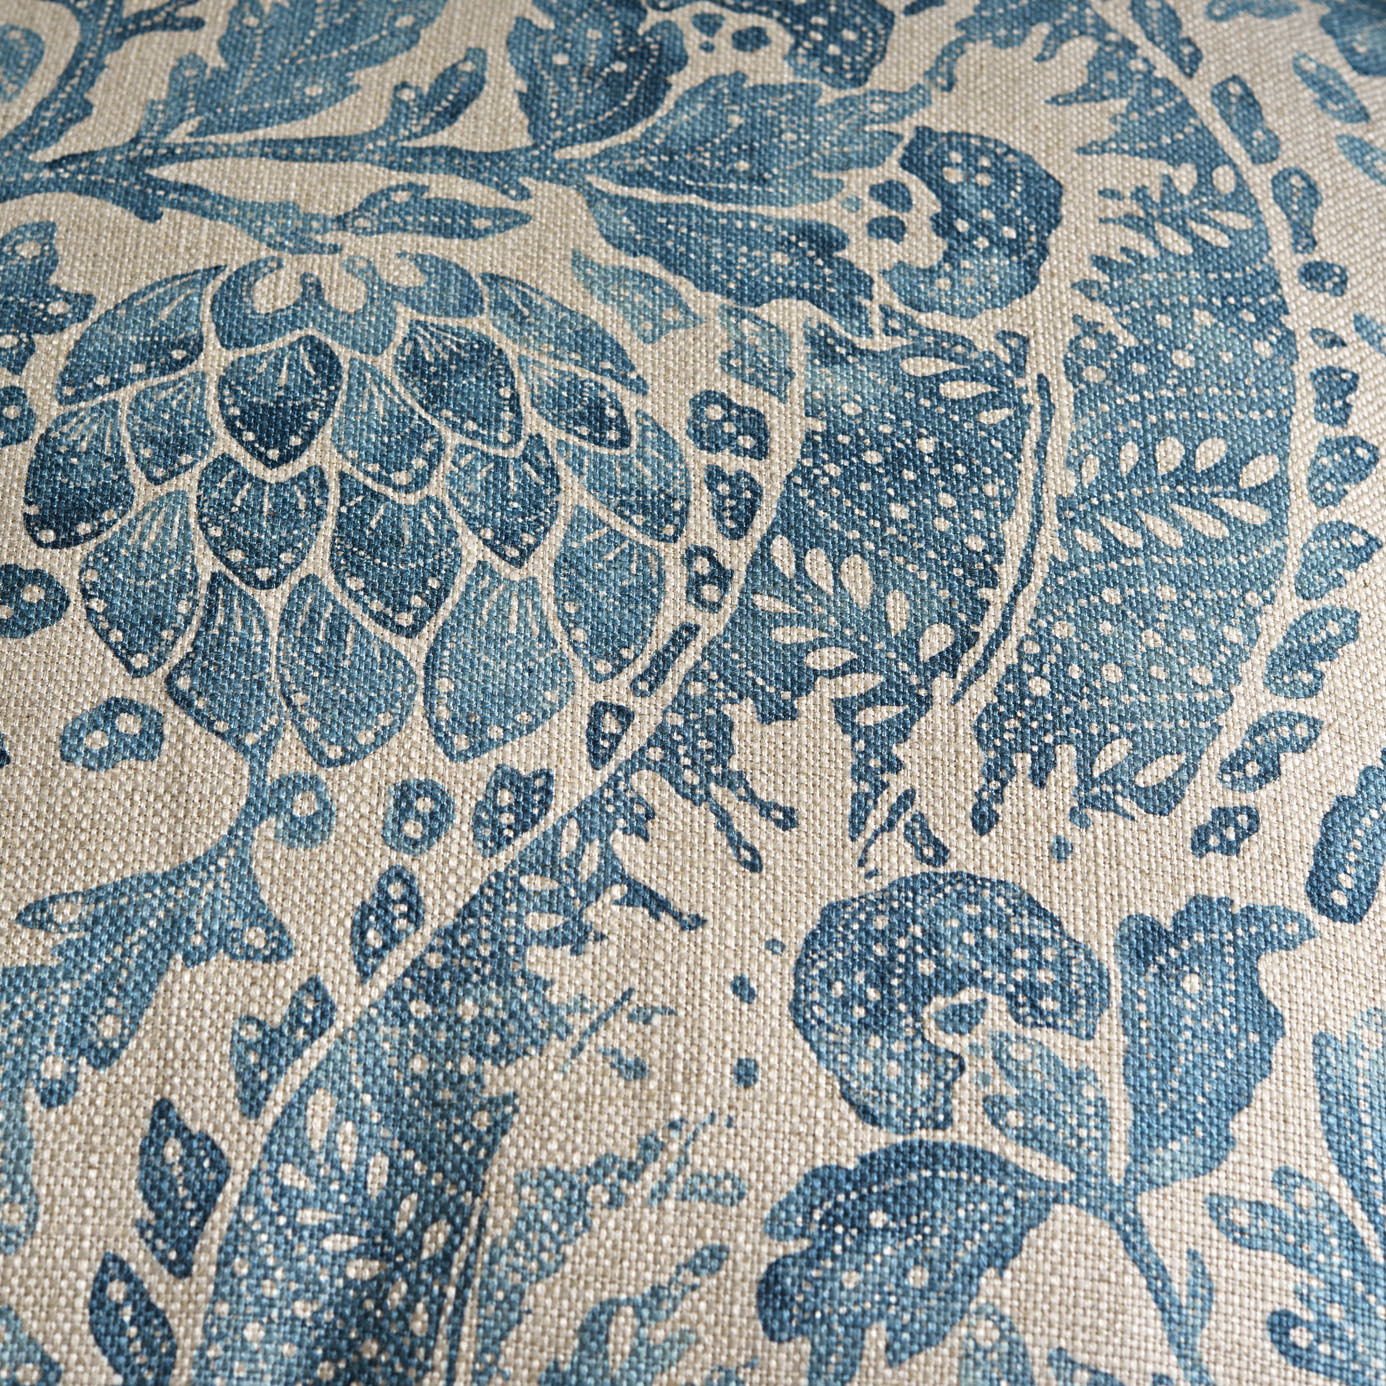 Cochin Blue Fabric by ZOF